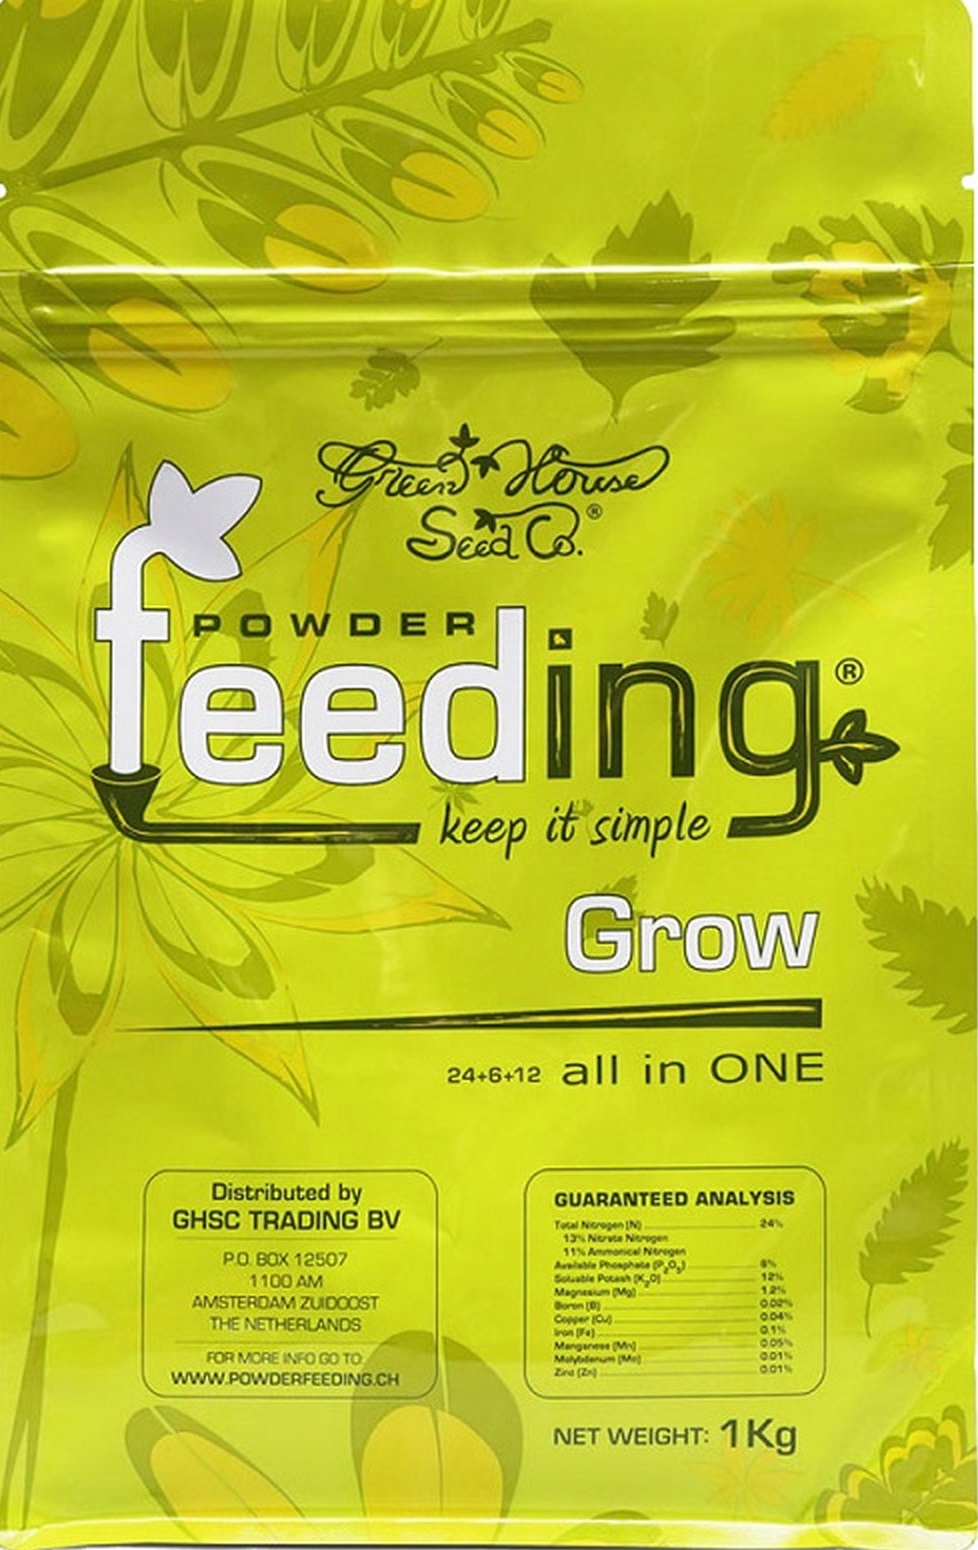 Powder-feeding-grow.jpg